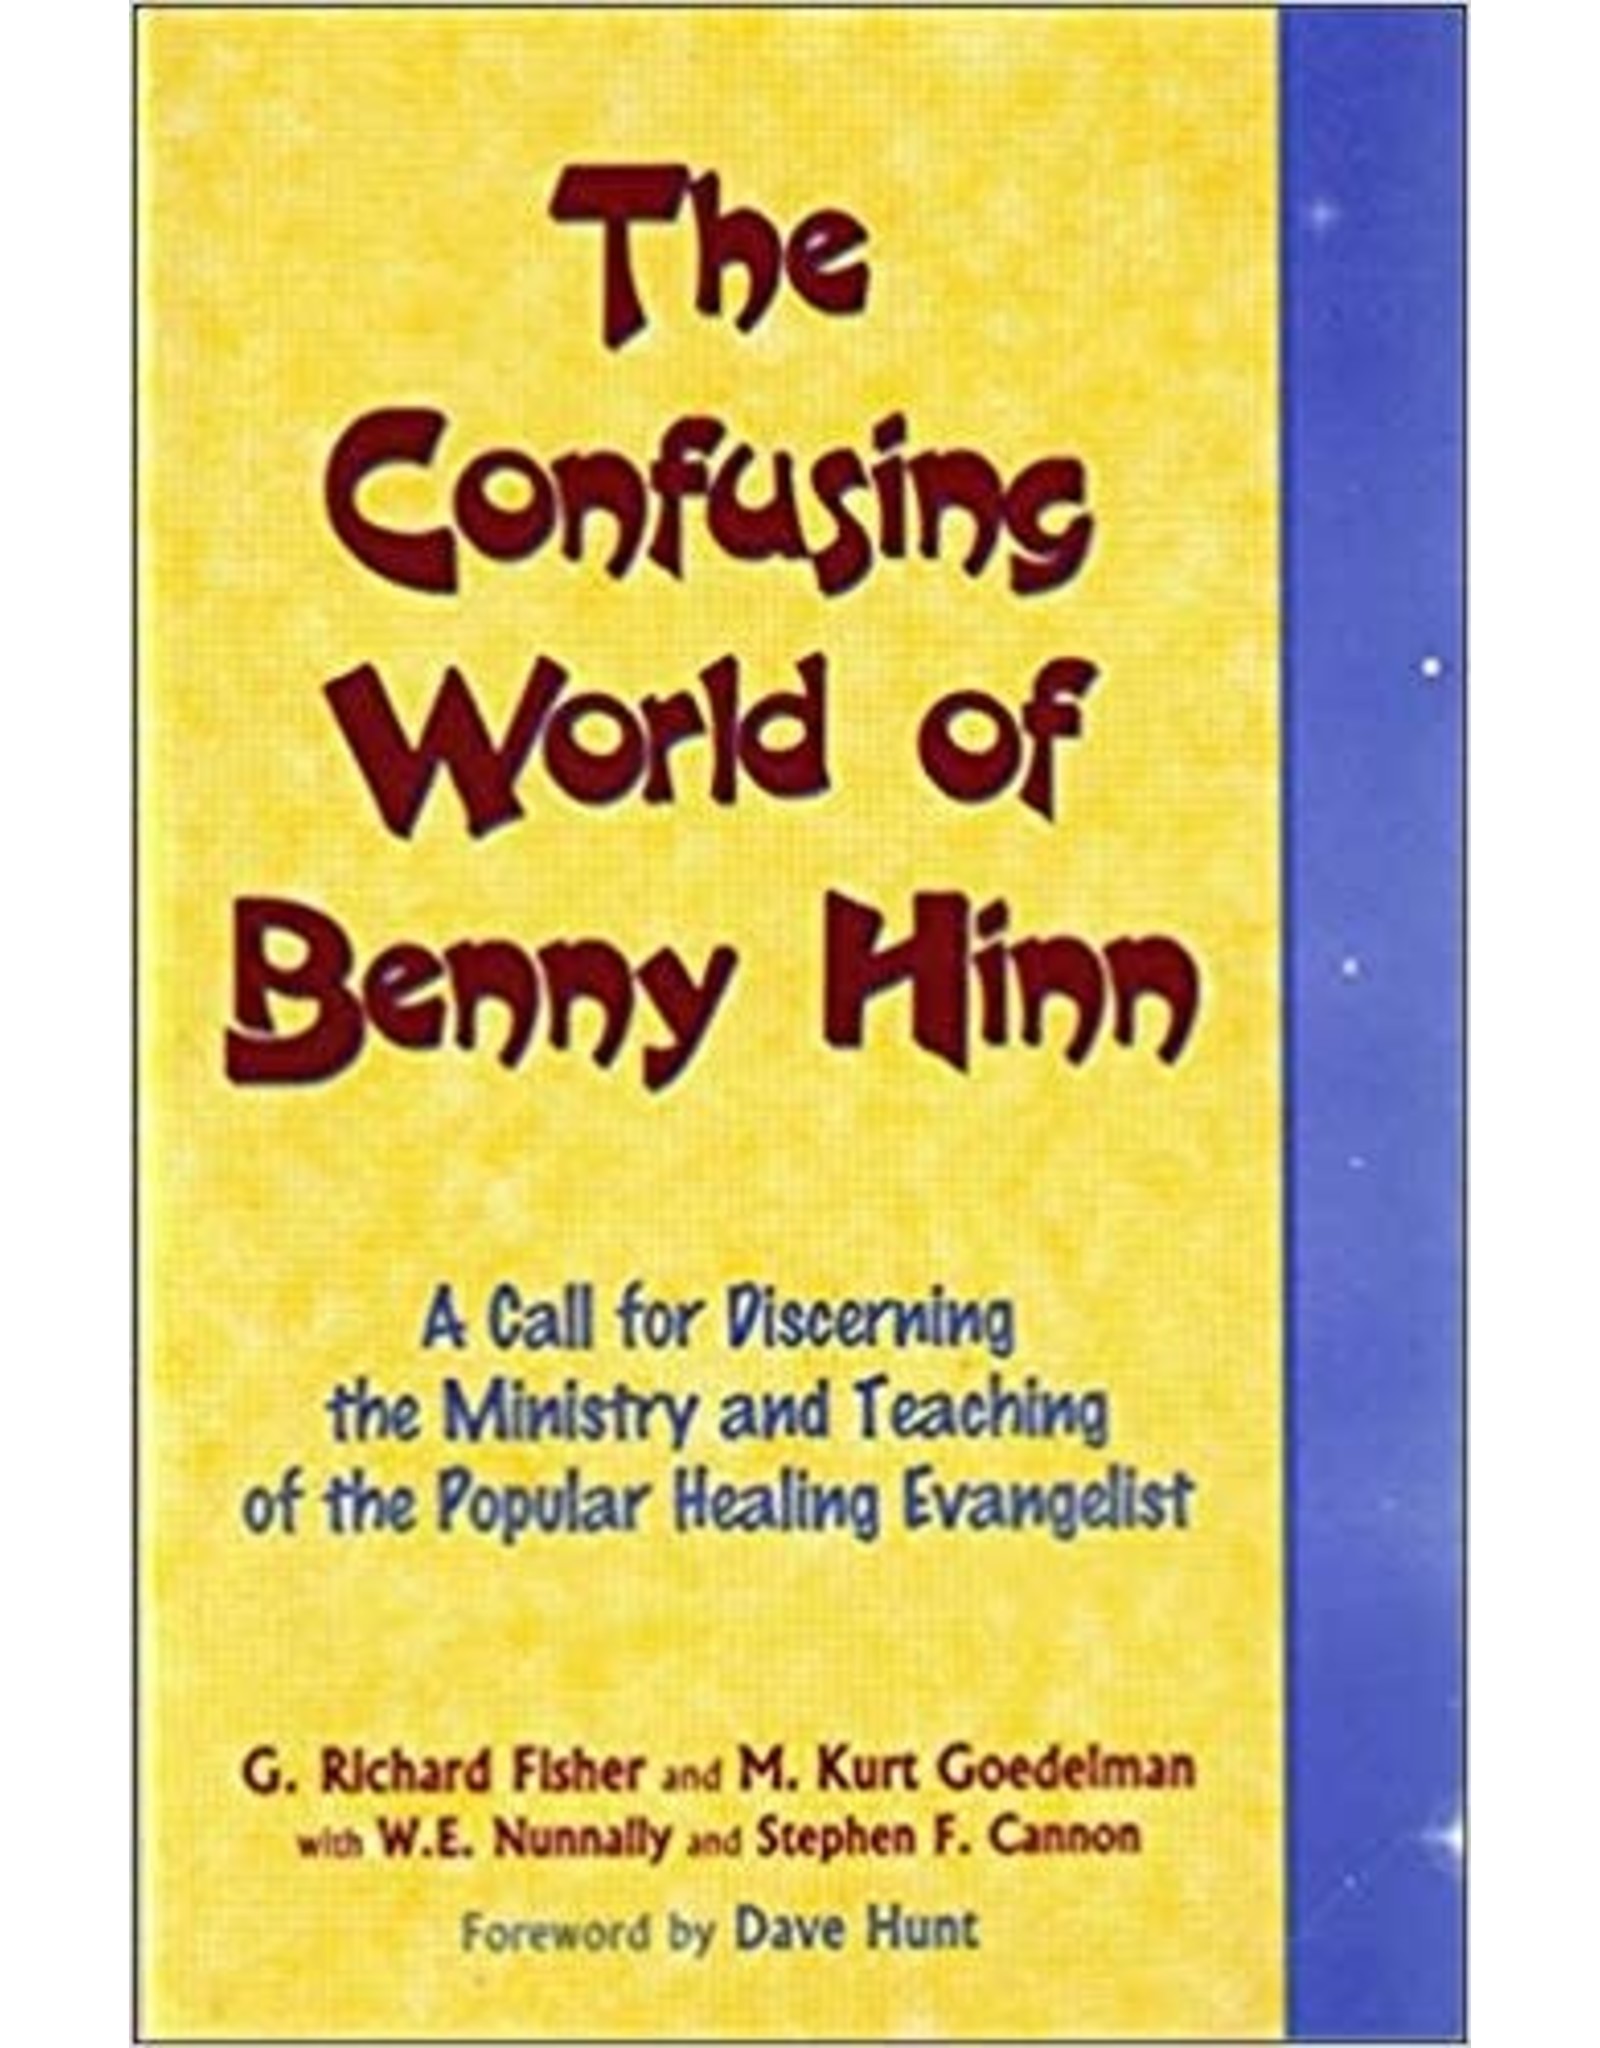 G.Richard Fisher, M.Kurt Goedelman, & G.Richard Fischer The Confusing World of Benny Hinn